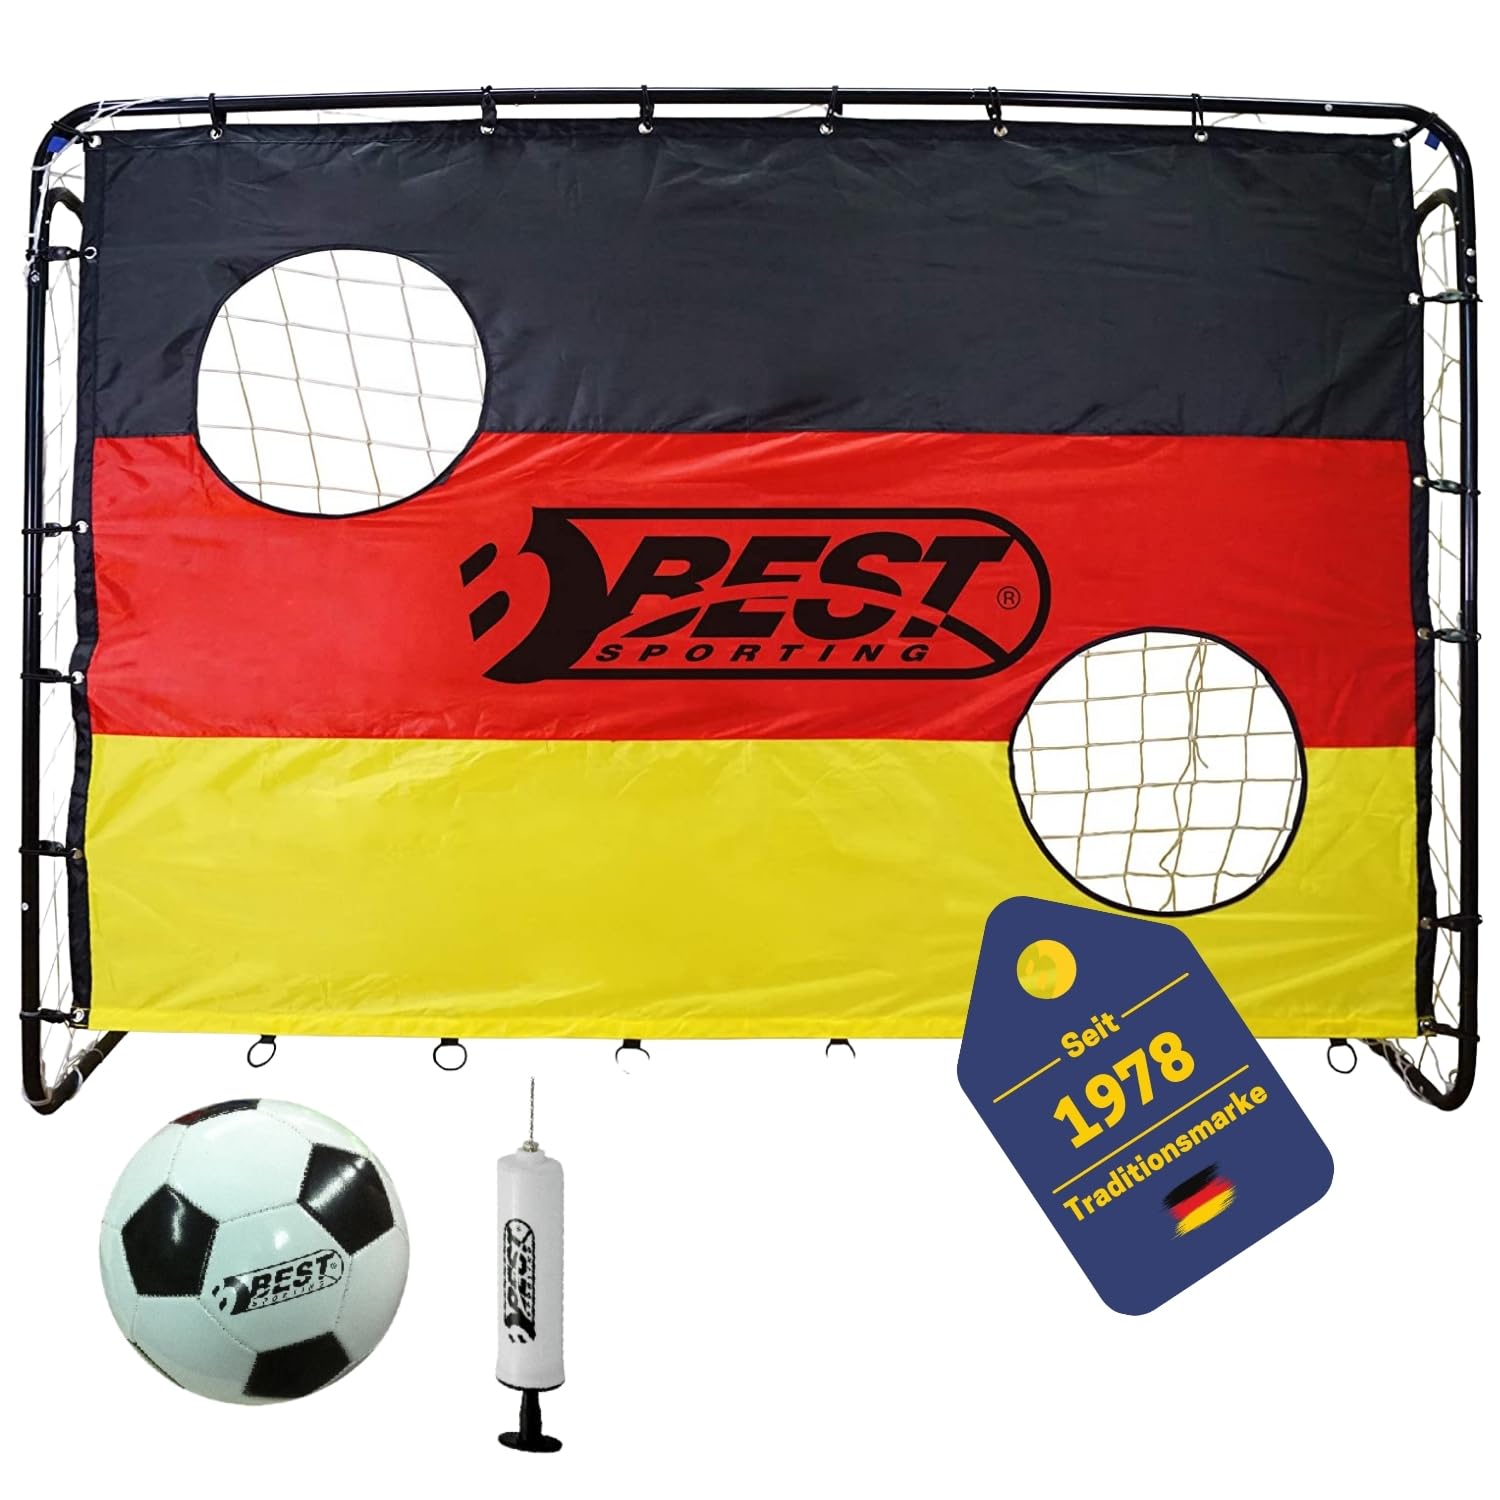 BestSporting Unisex – Erwachsene Deutschland Fußballtor, schwarz, rot, gelb, One Size Best Sporting Fußballtor Set mit Torwand mit 2 Schusslöchern, Ball & Pumpe